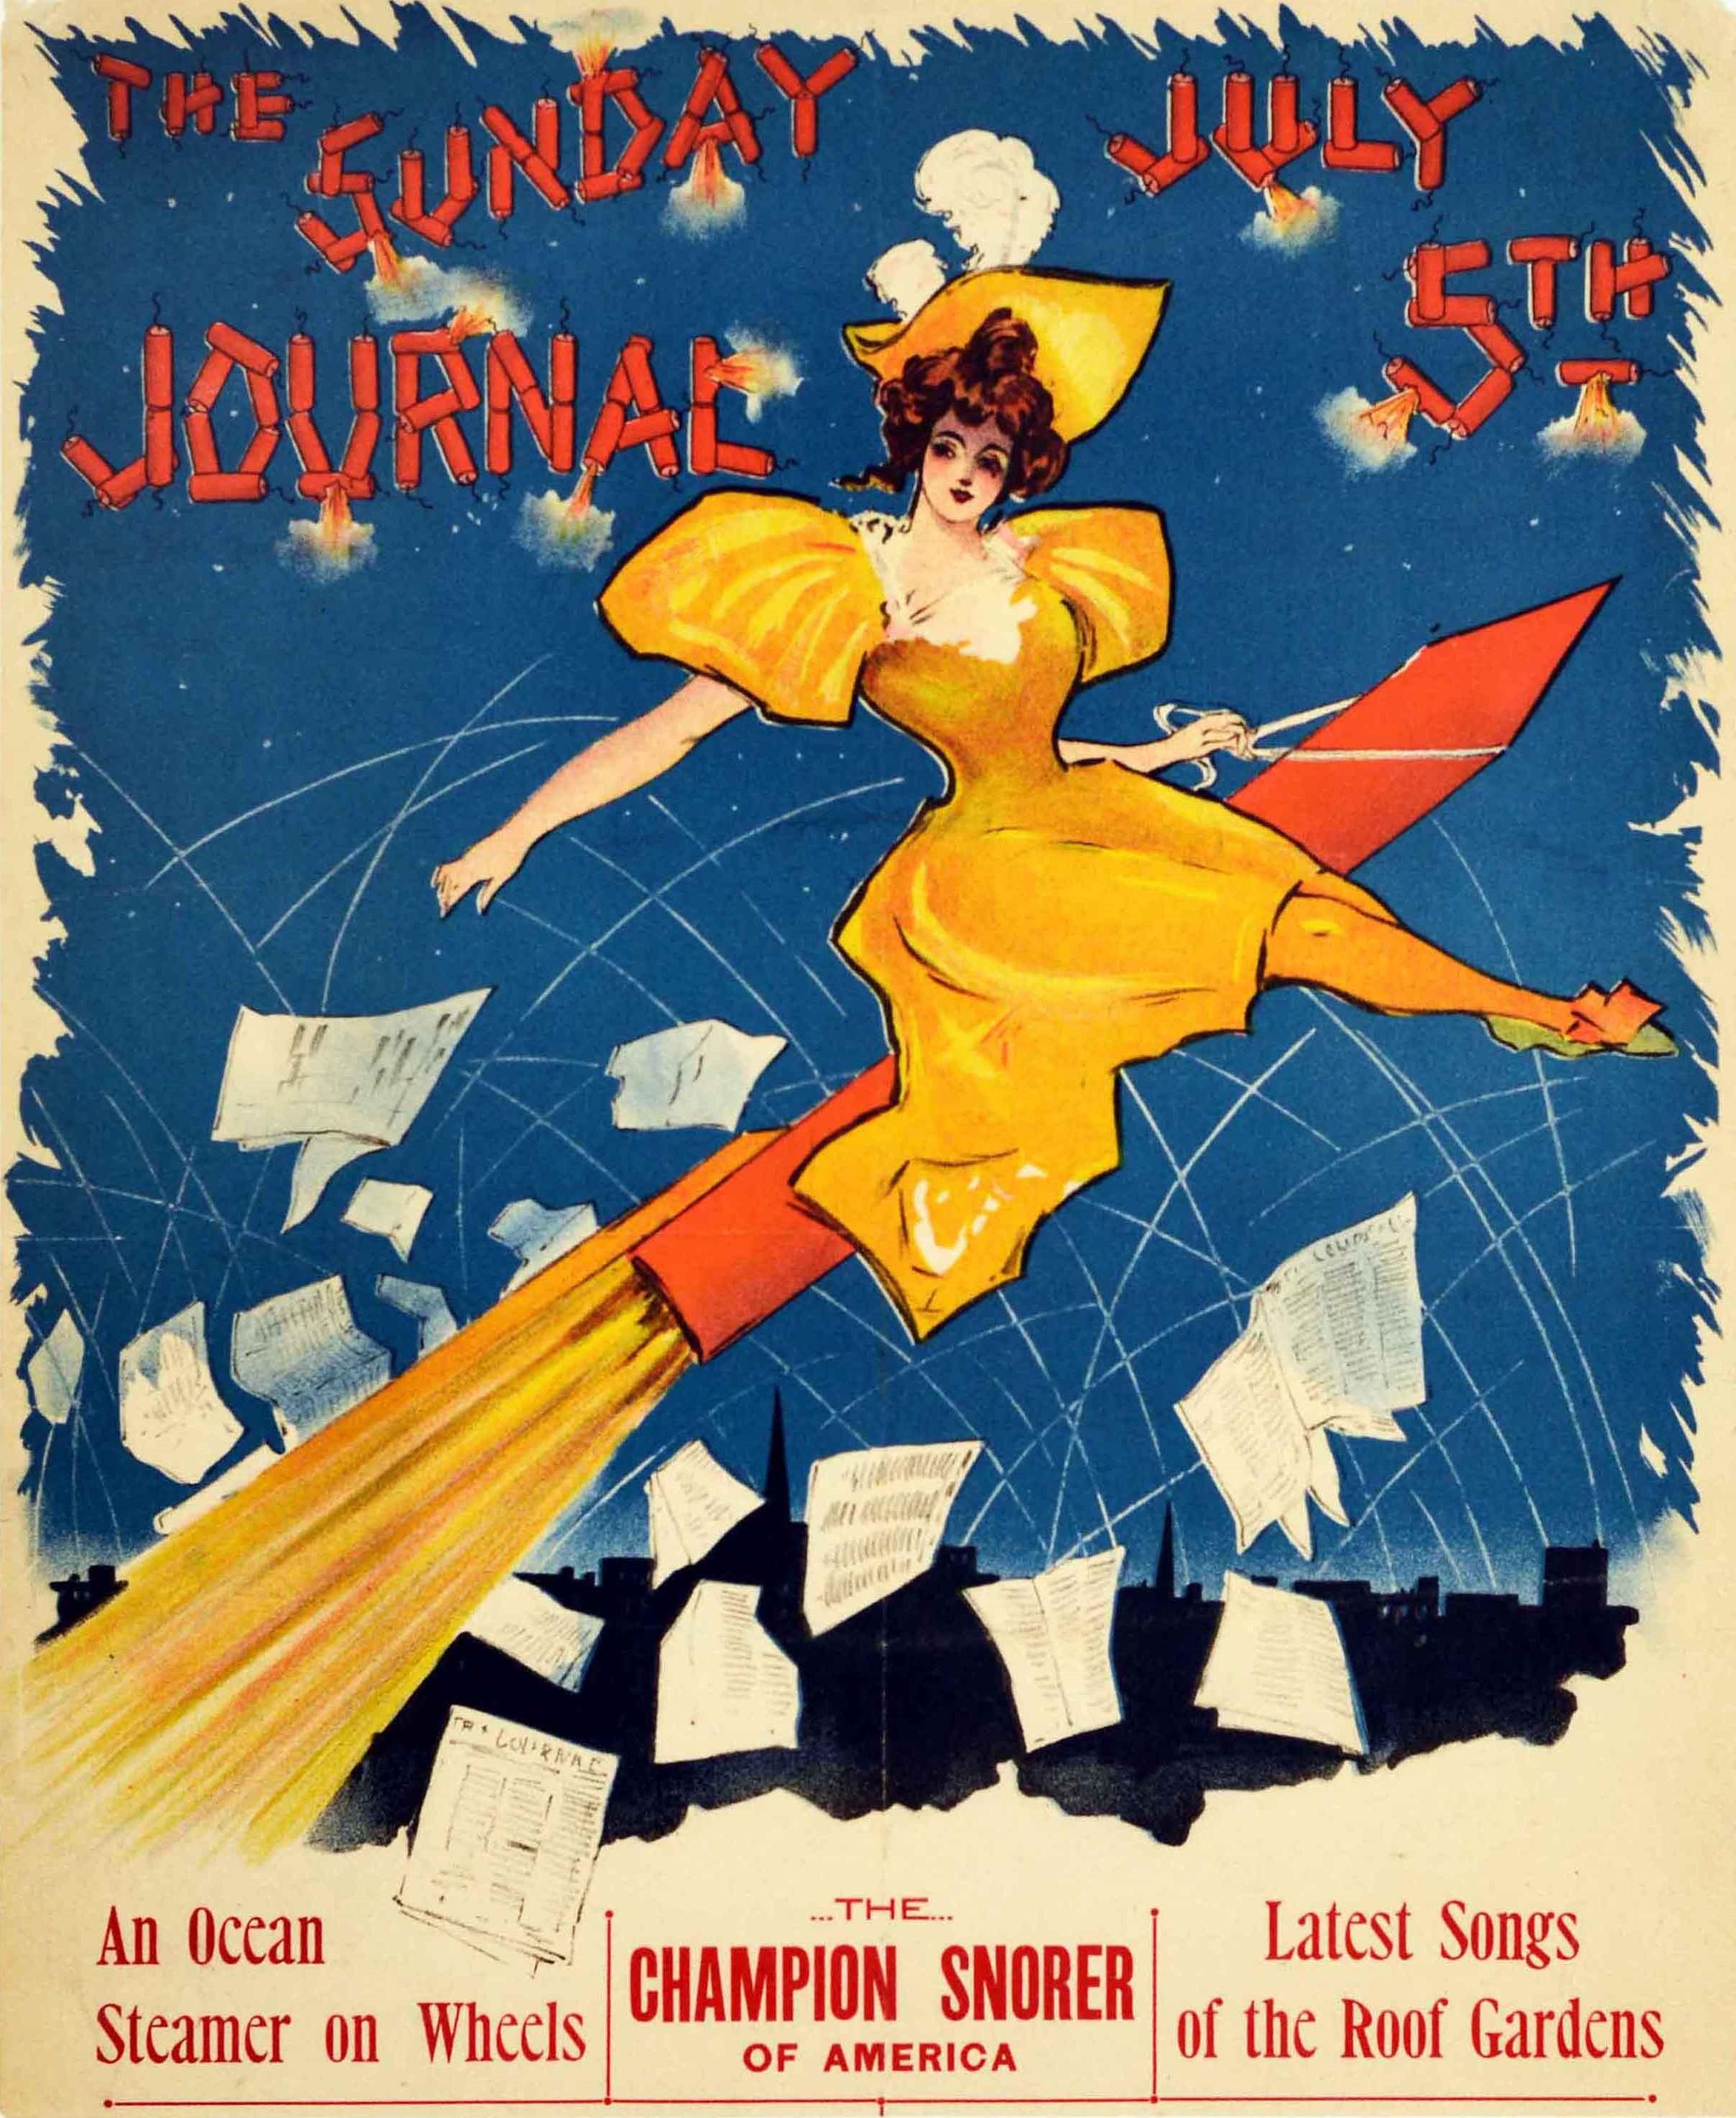 Ernest Haskell Print - Original Antique Poster Sunday Journal July 5th Fireworks Belle Epoque Design